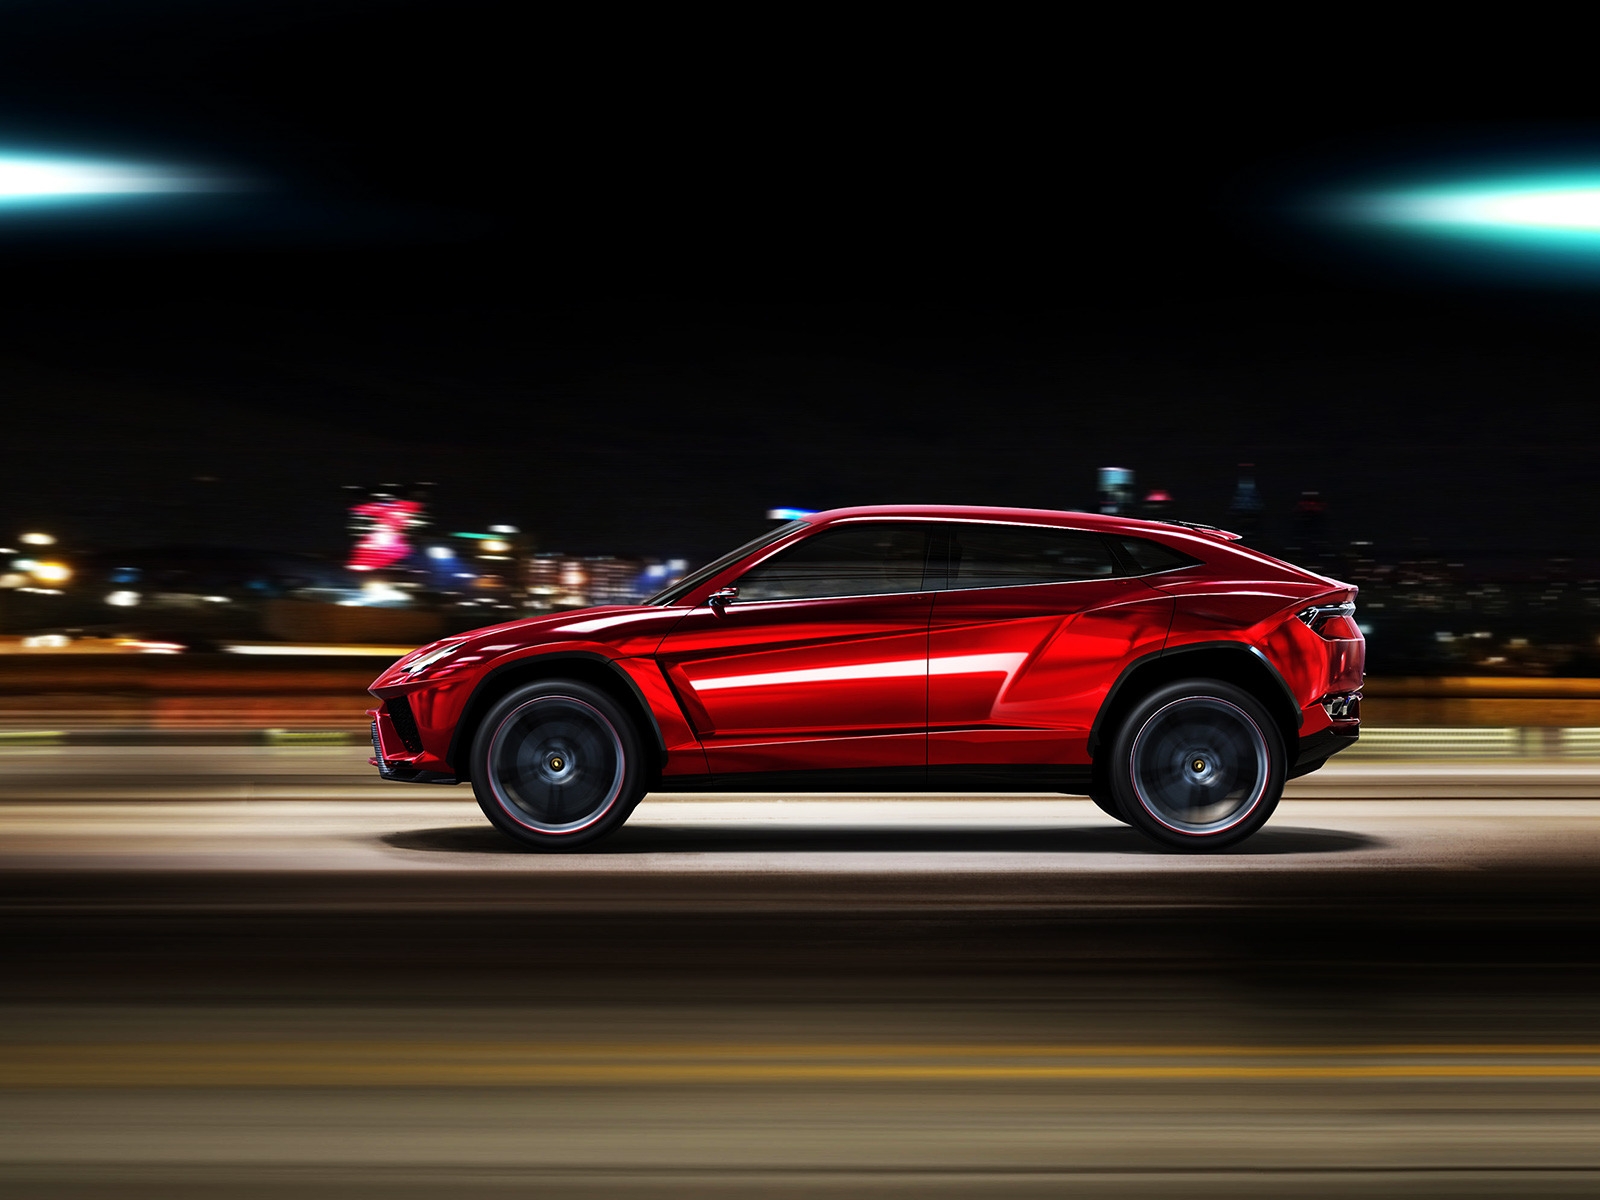 Lamborghini Urus Speed for 1600 x 1200 resolution